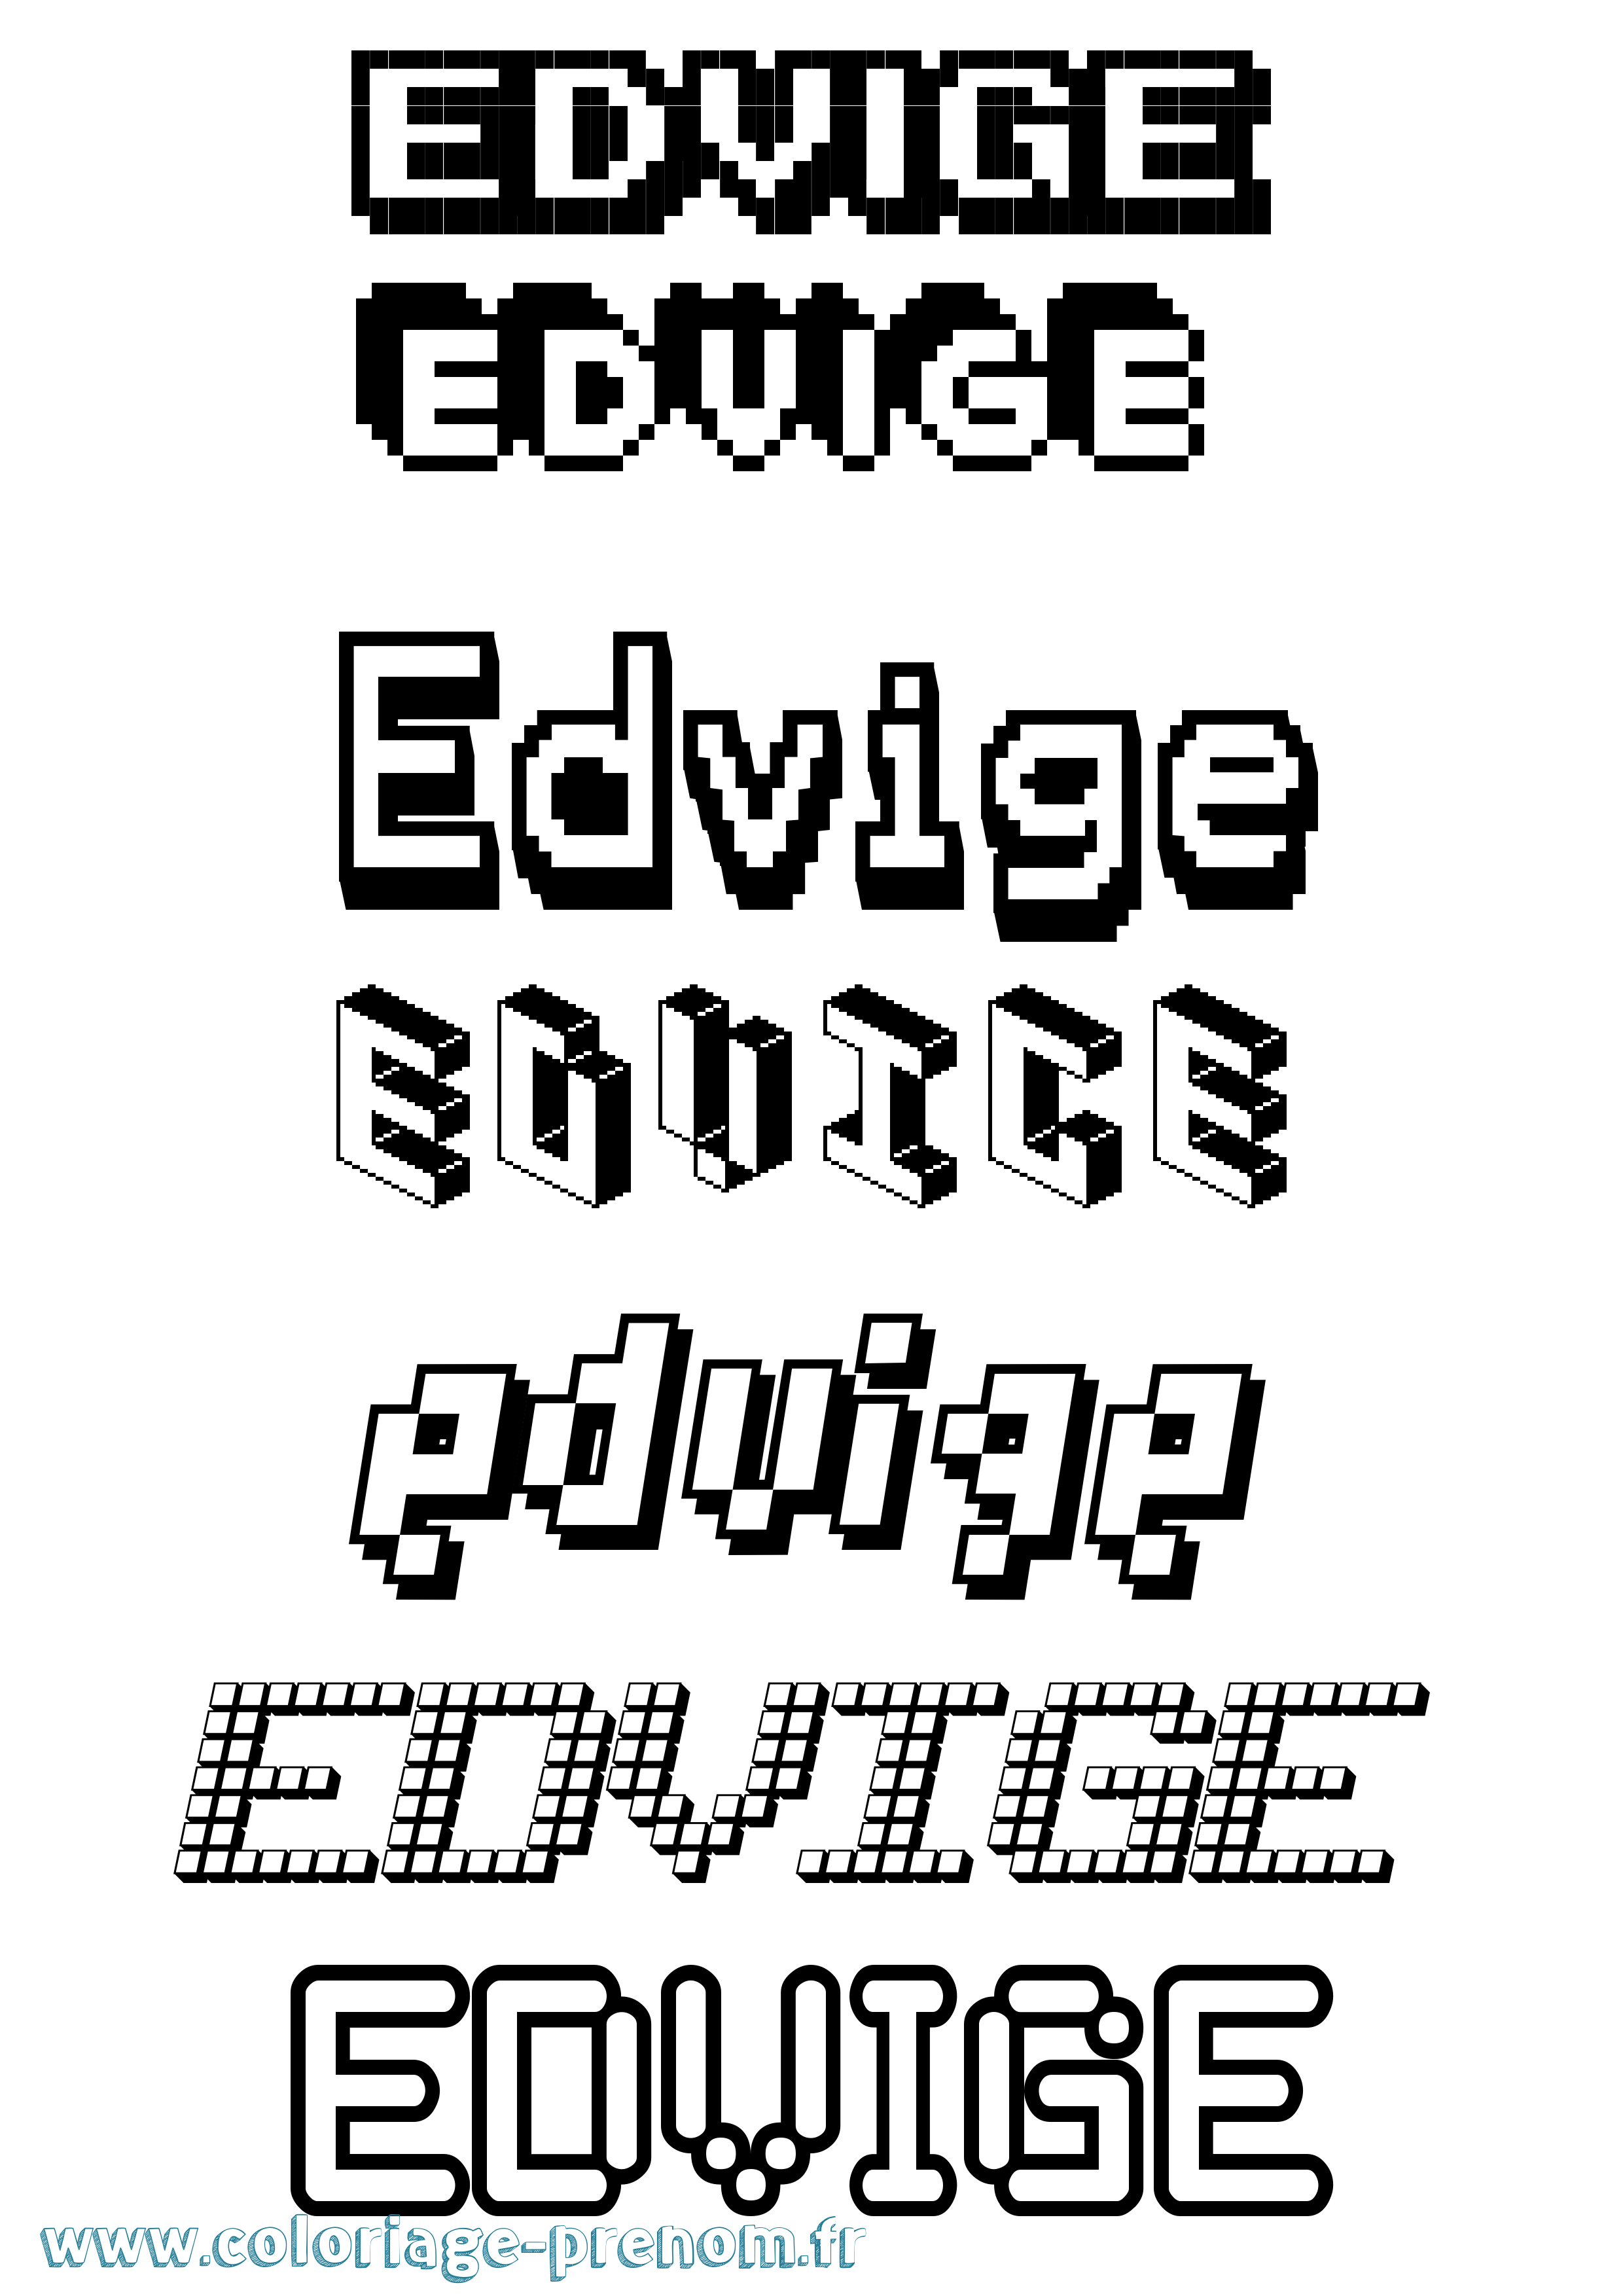 Coloriage prénom Edvige Pixel